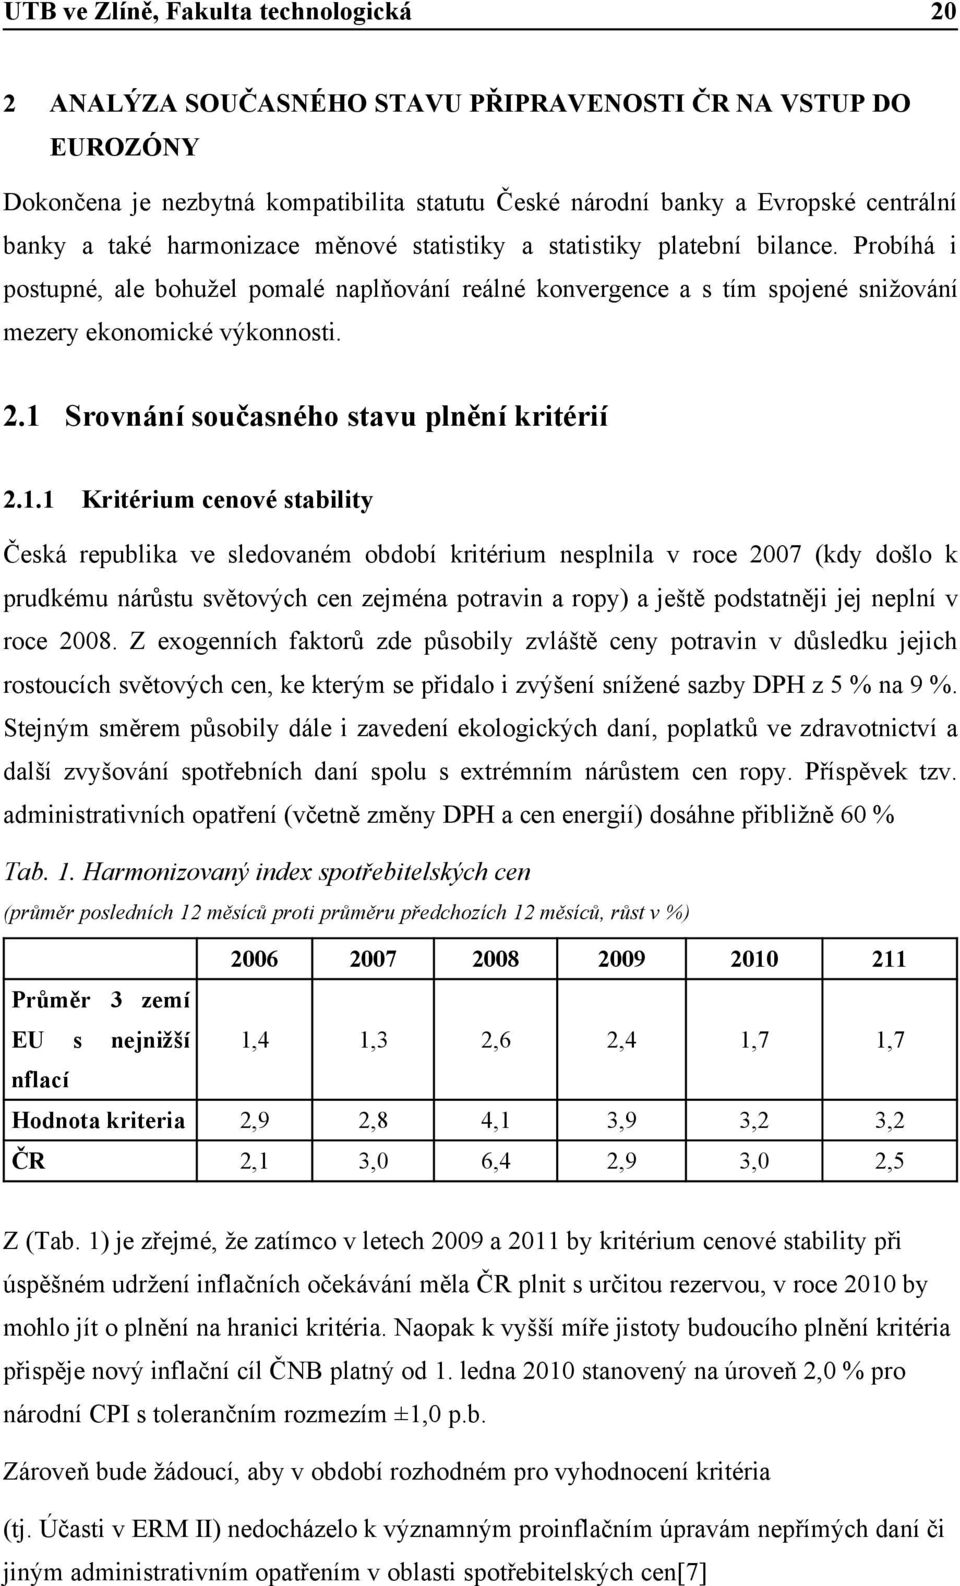 1 Srovnání současného stavu plnění kritérií 2.1.1 Kritérium cenové stability Česká republika ve sledovaném období kritérium nesplnila v roce 2007 (kdy došlo k prudkému nárůstu světových cen zejména